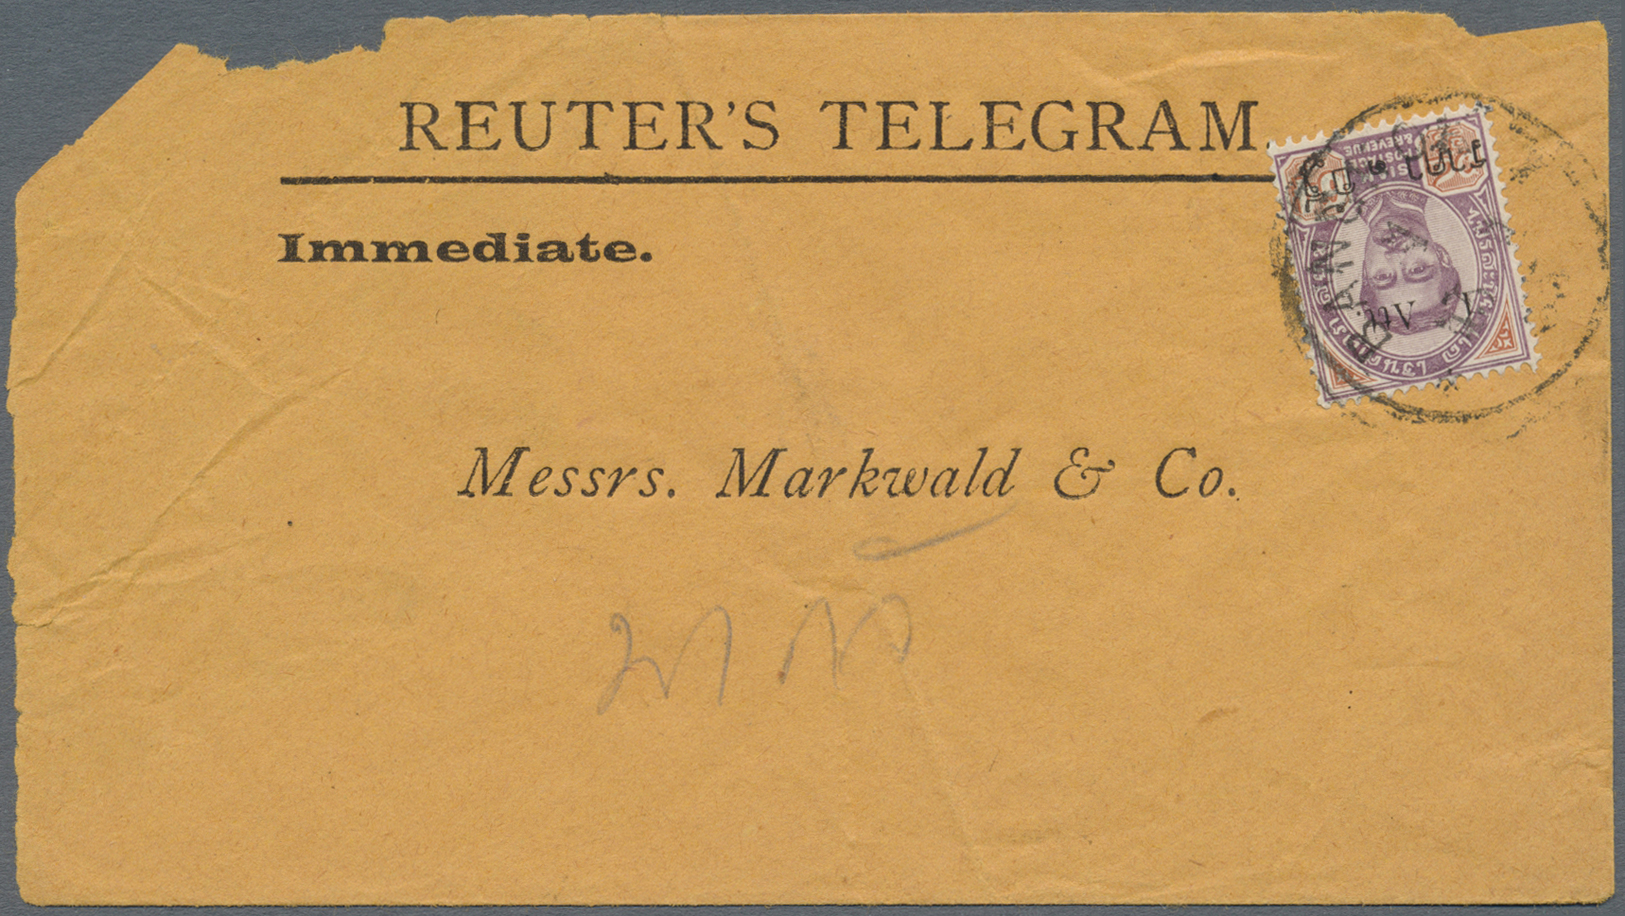 Br Thailand: 1894, 1 Att./64 Att. Tied "BANGKOK1 15 1 95" To Envelope "REUTER'S TELEGRAM", Backstamps "BANGKOK2 15 1 III - Thailand